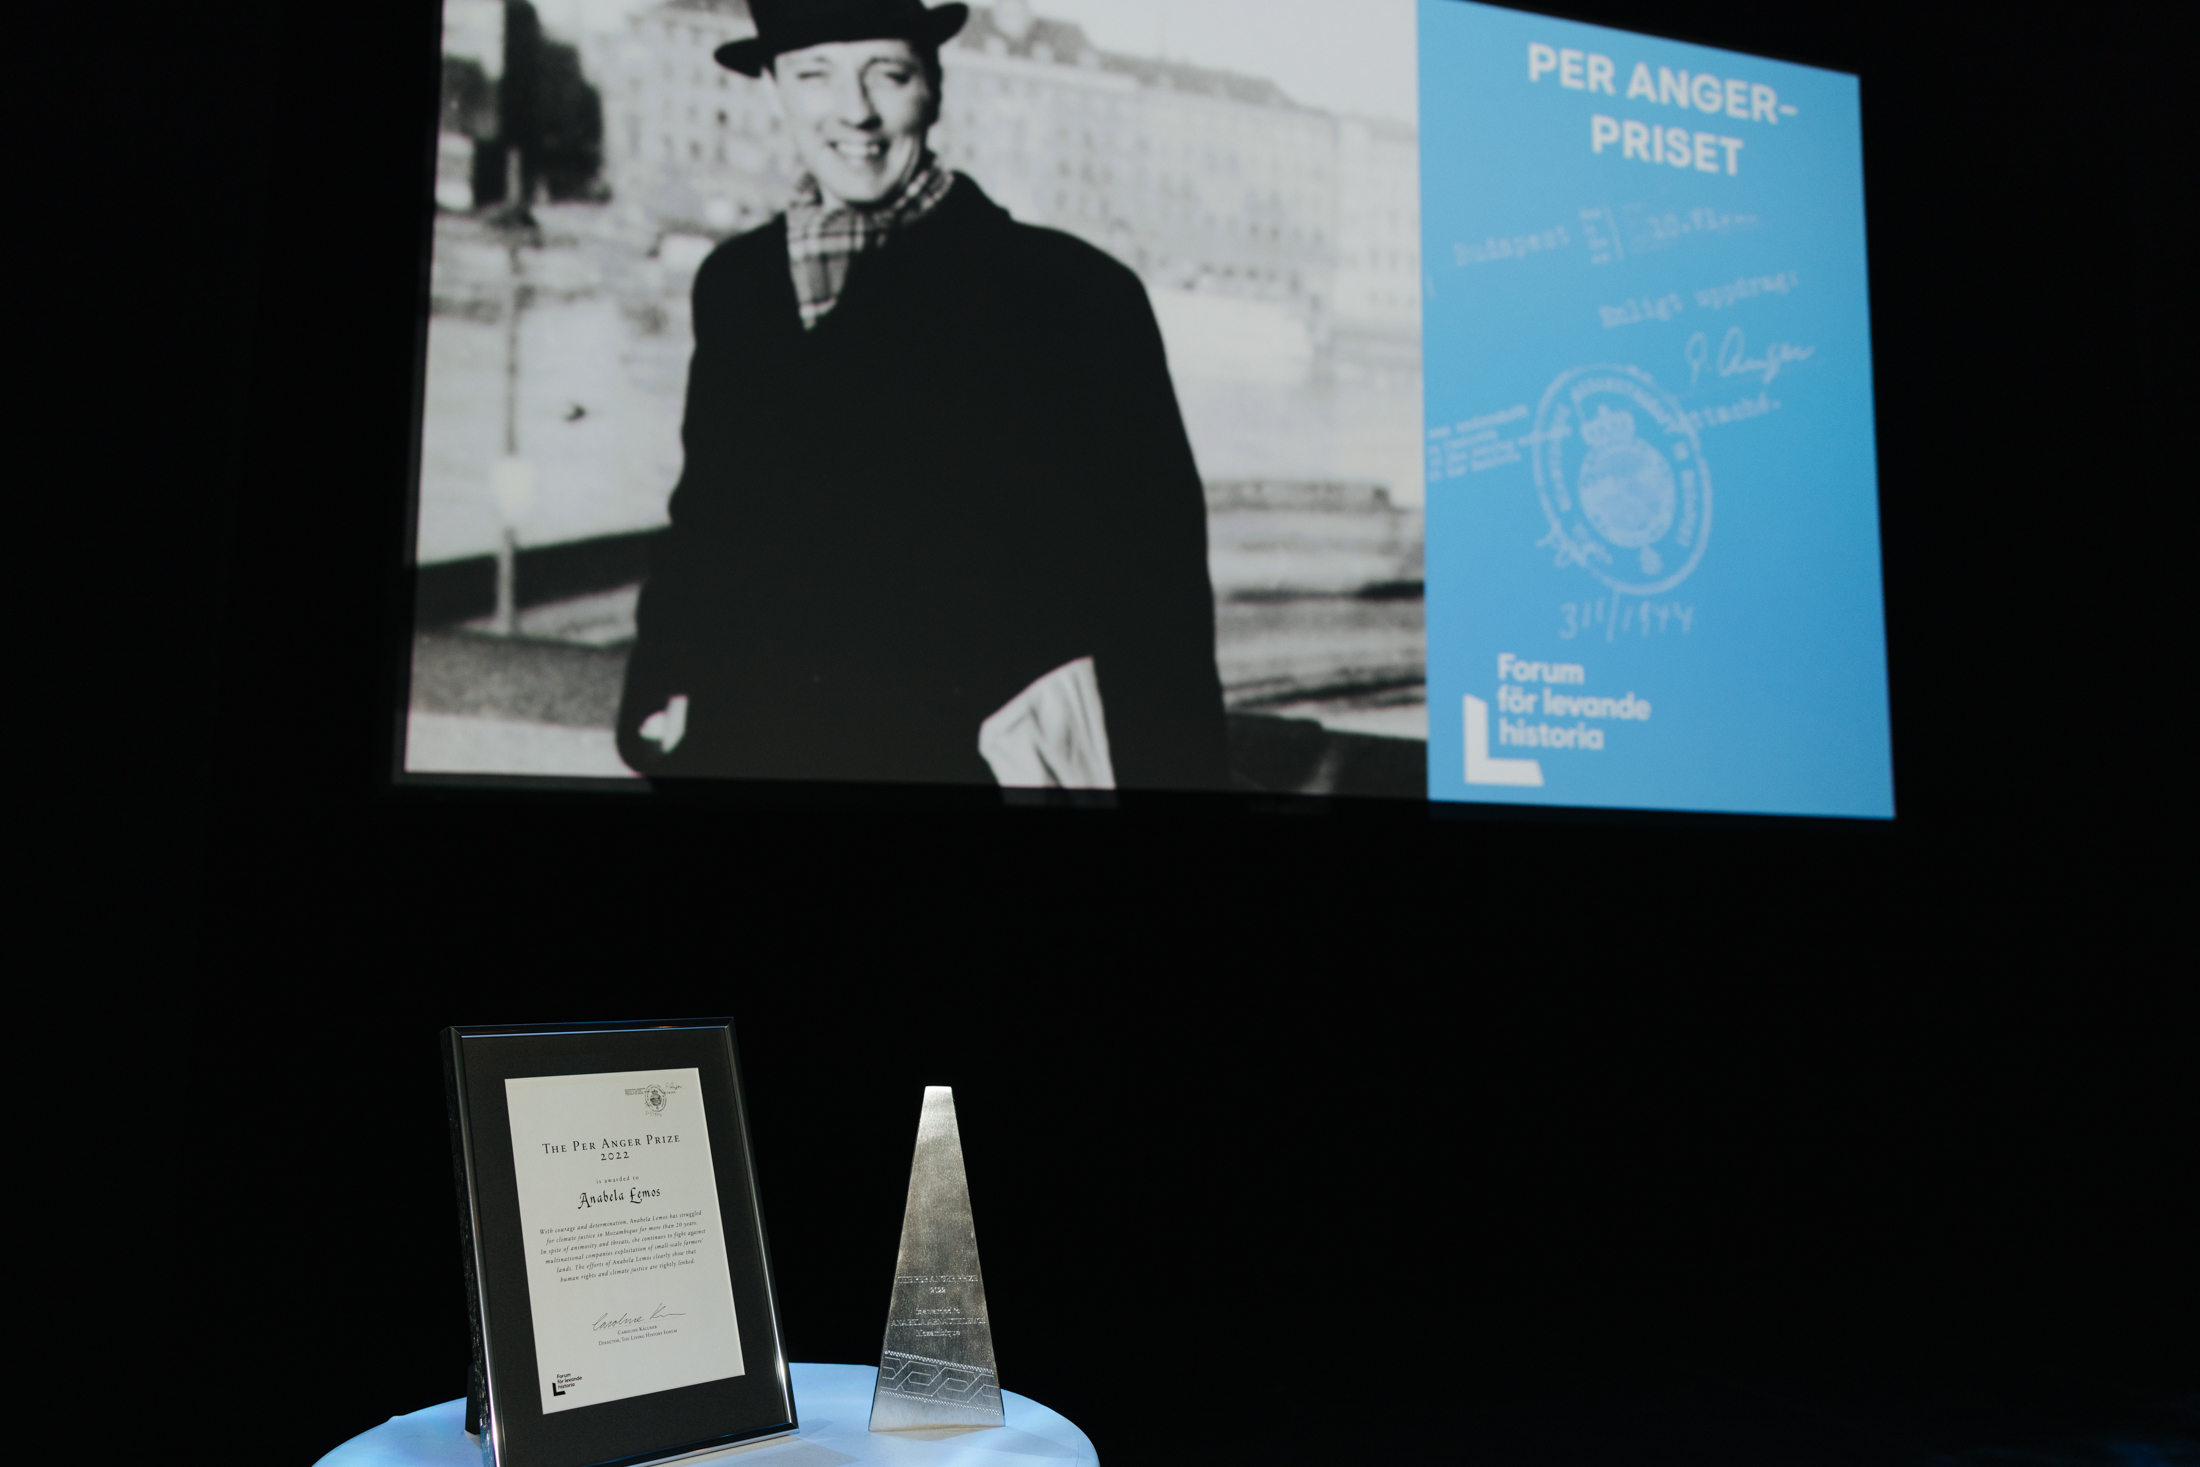 På ett bord står ett diplom och ett pris, på en skärm visas en bild av Per Anger